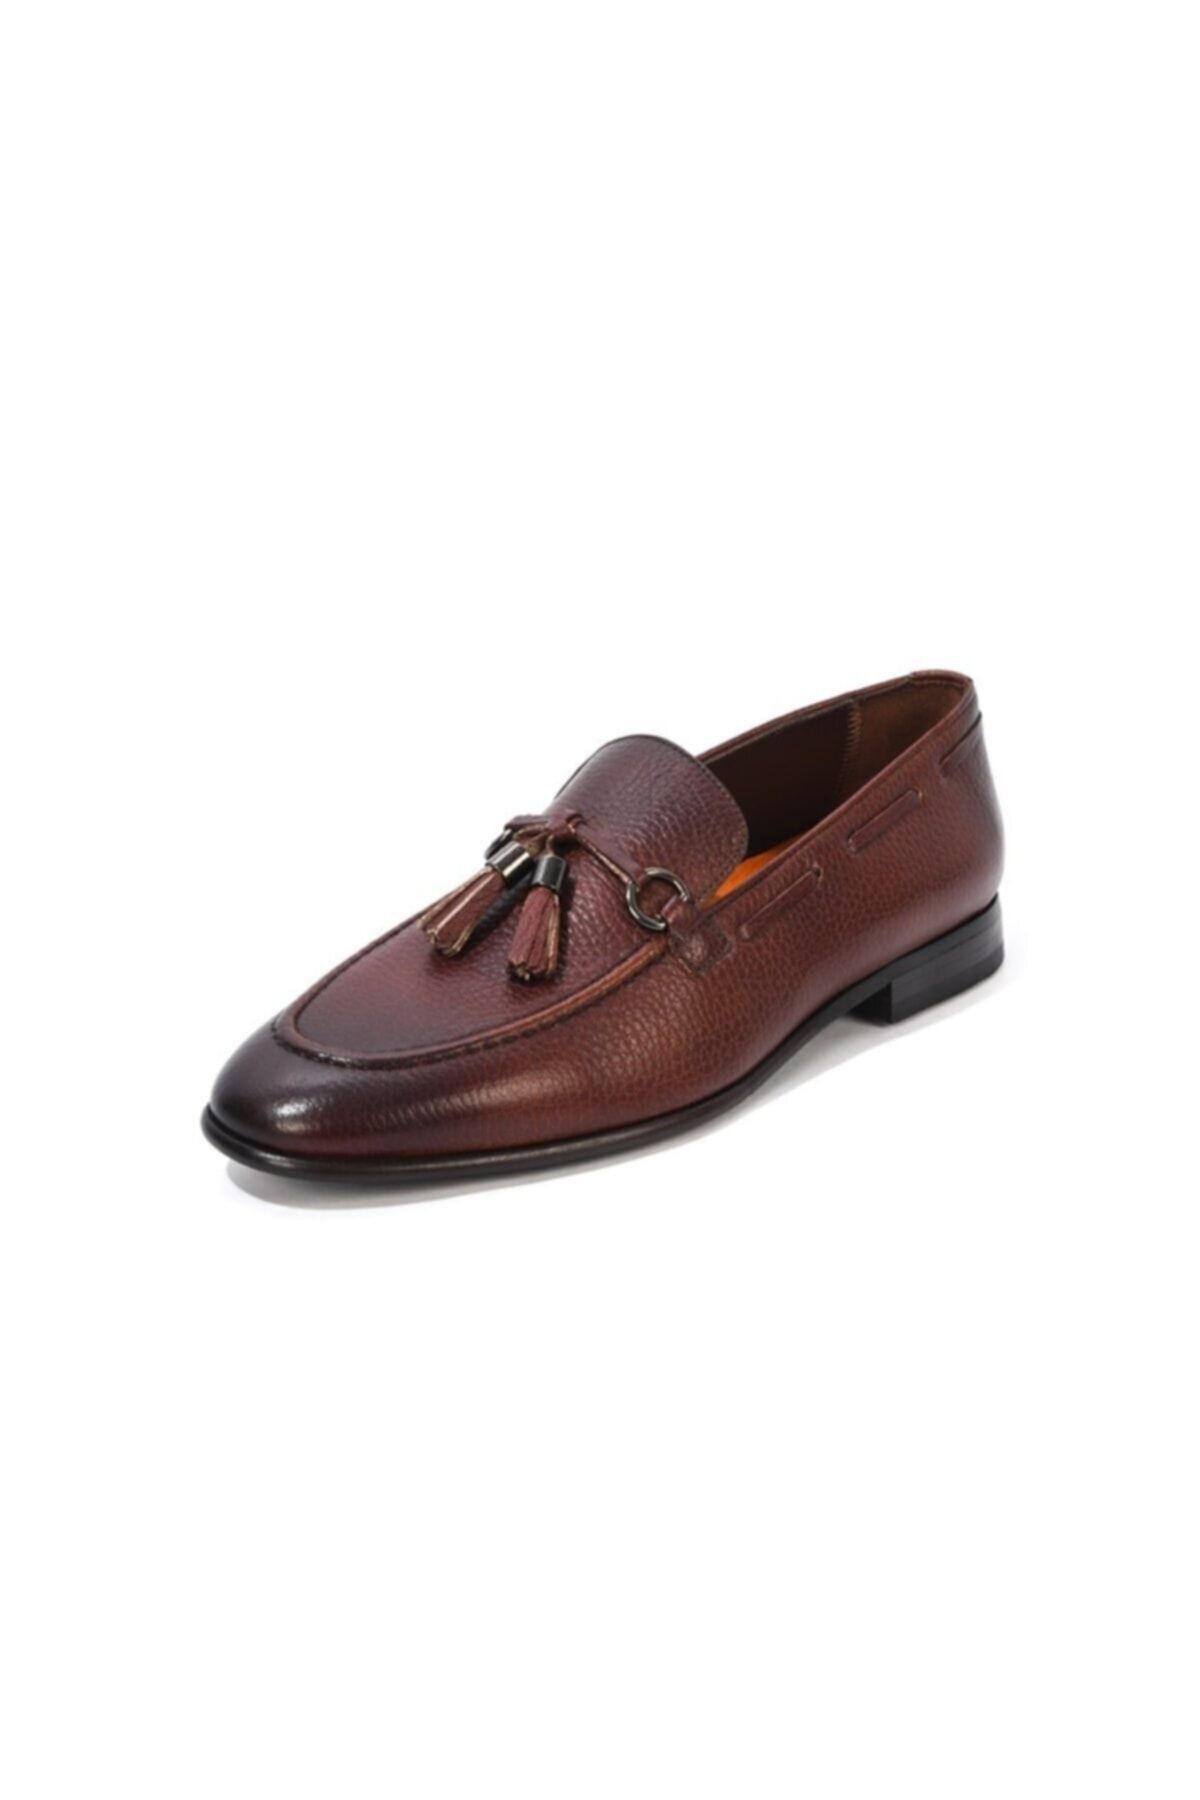 MARCOMEN Erkek Kahverengi Klasik Ayakkabı Ö21y13133-00016